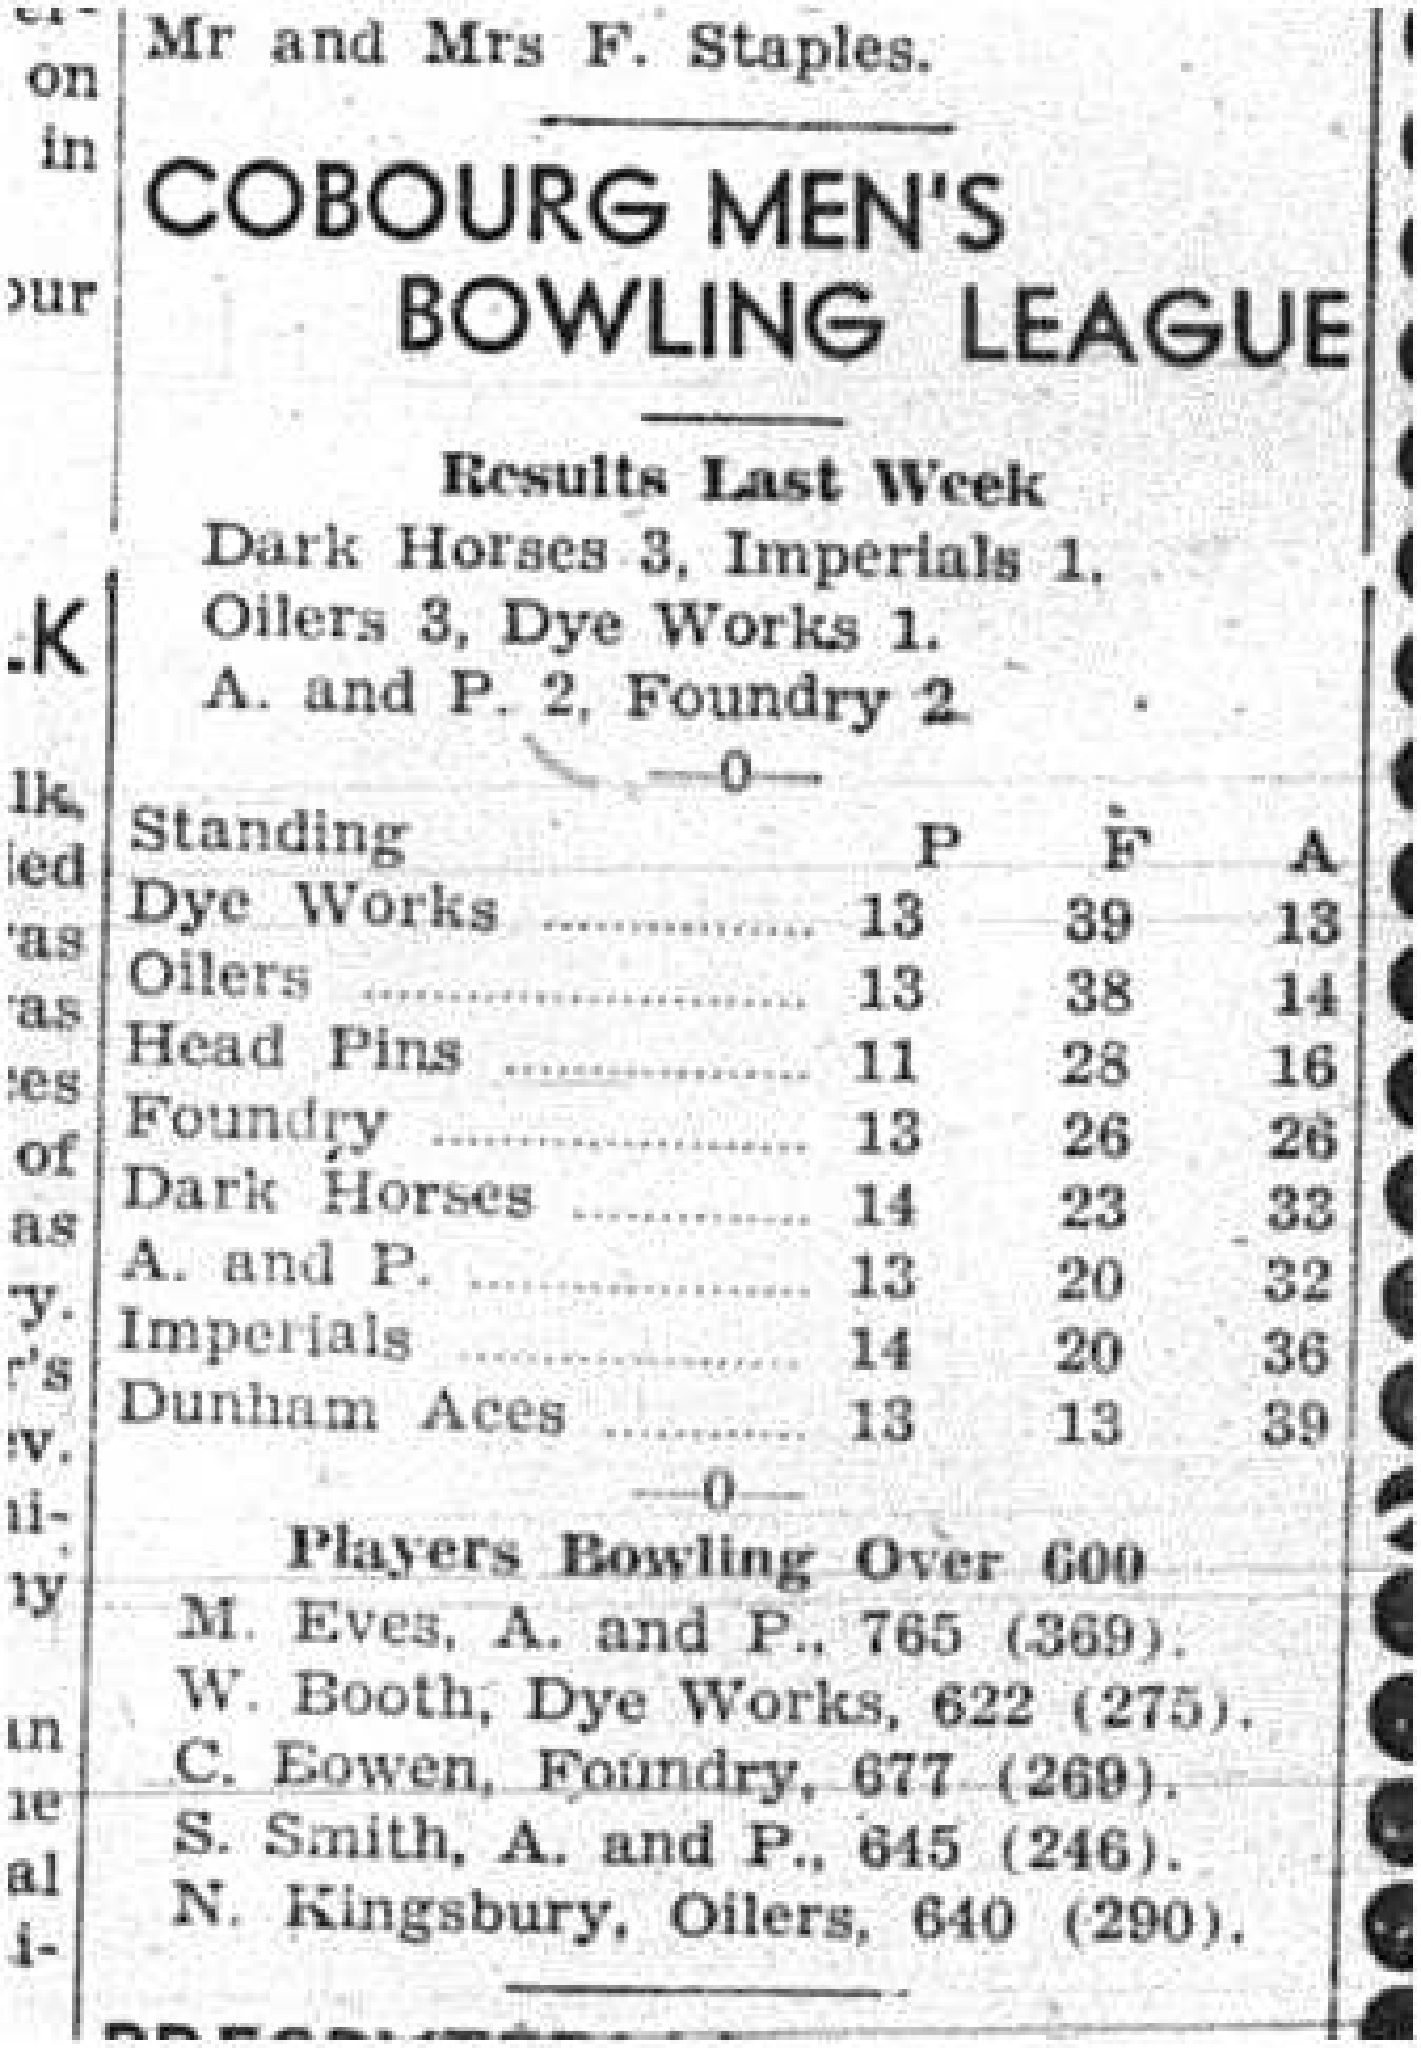 1943-02-11 Bowling - Men